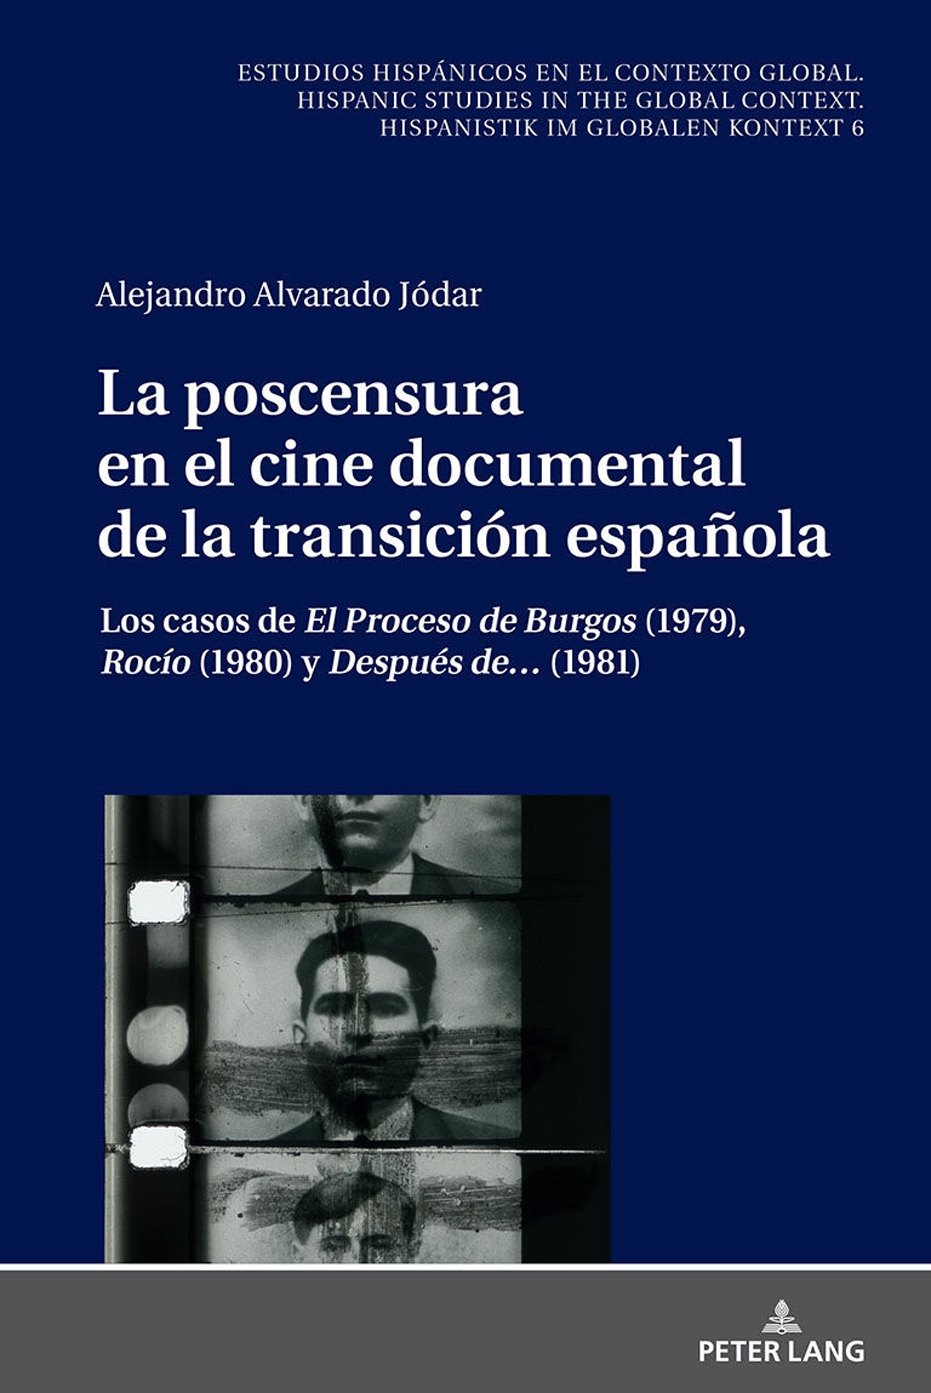 Coloquio presentación de La poscensura en el cine documental de la transición española, de Alejandro Alvarado